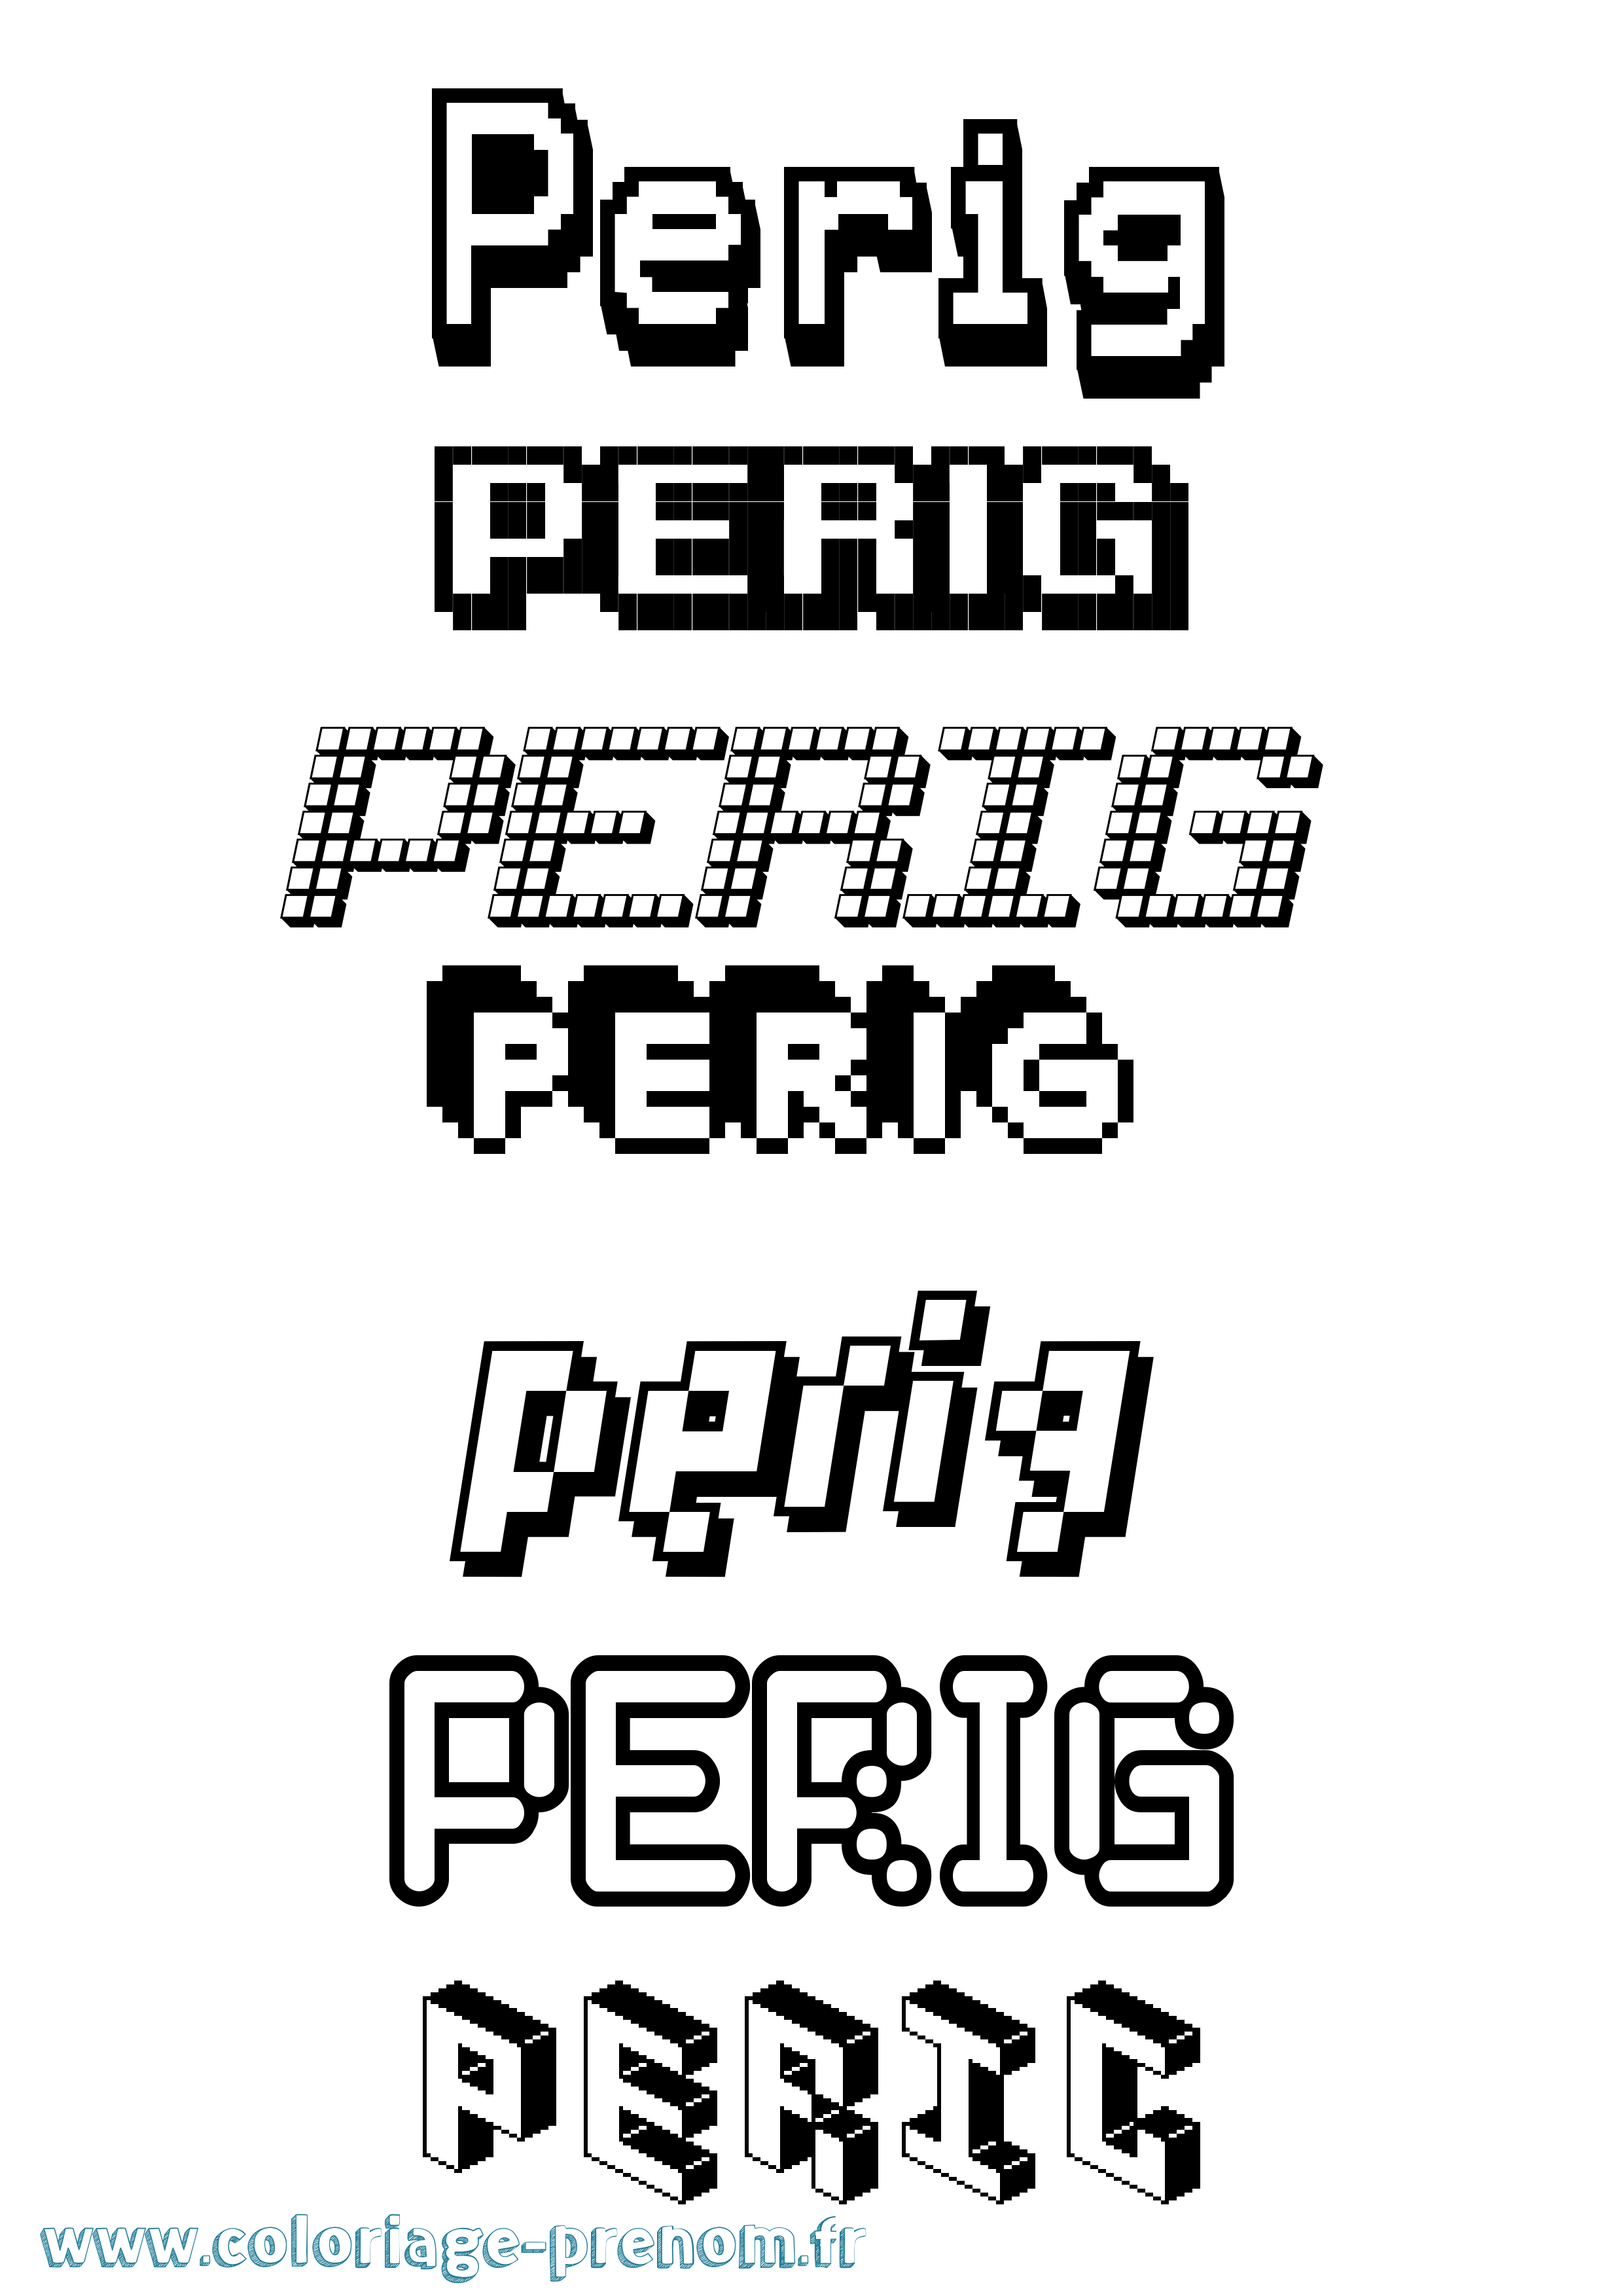 Coloriage prénom Perig Pixel